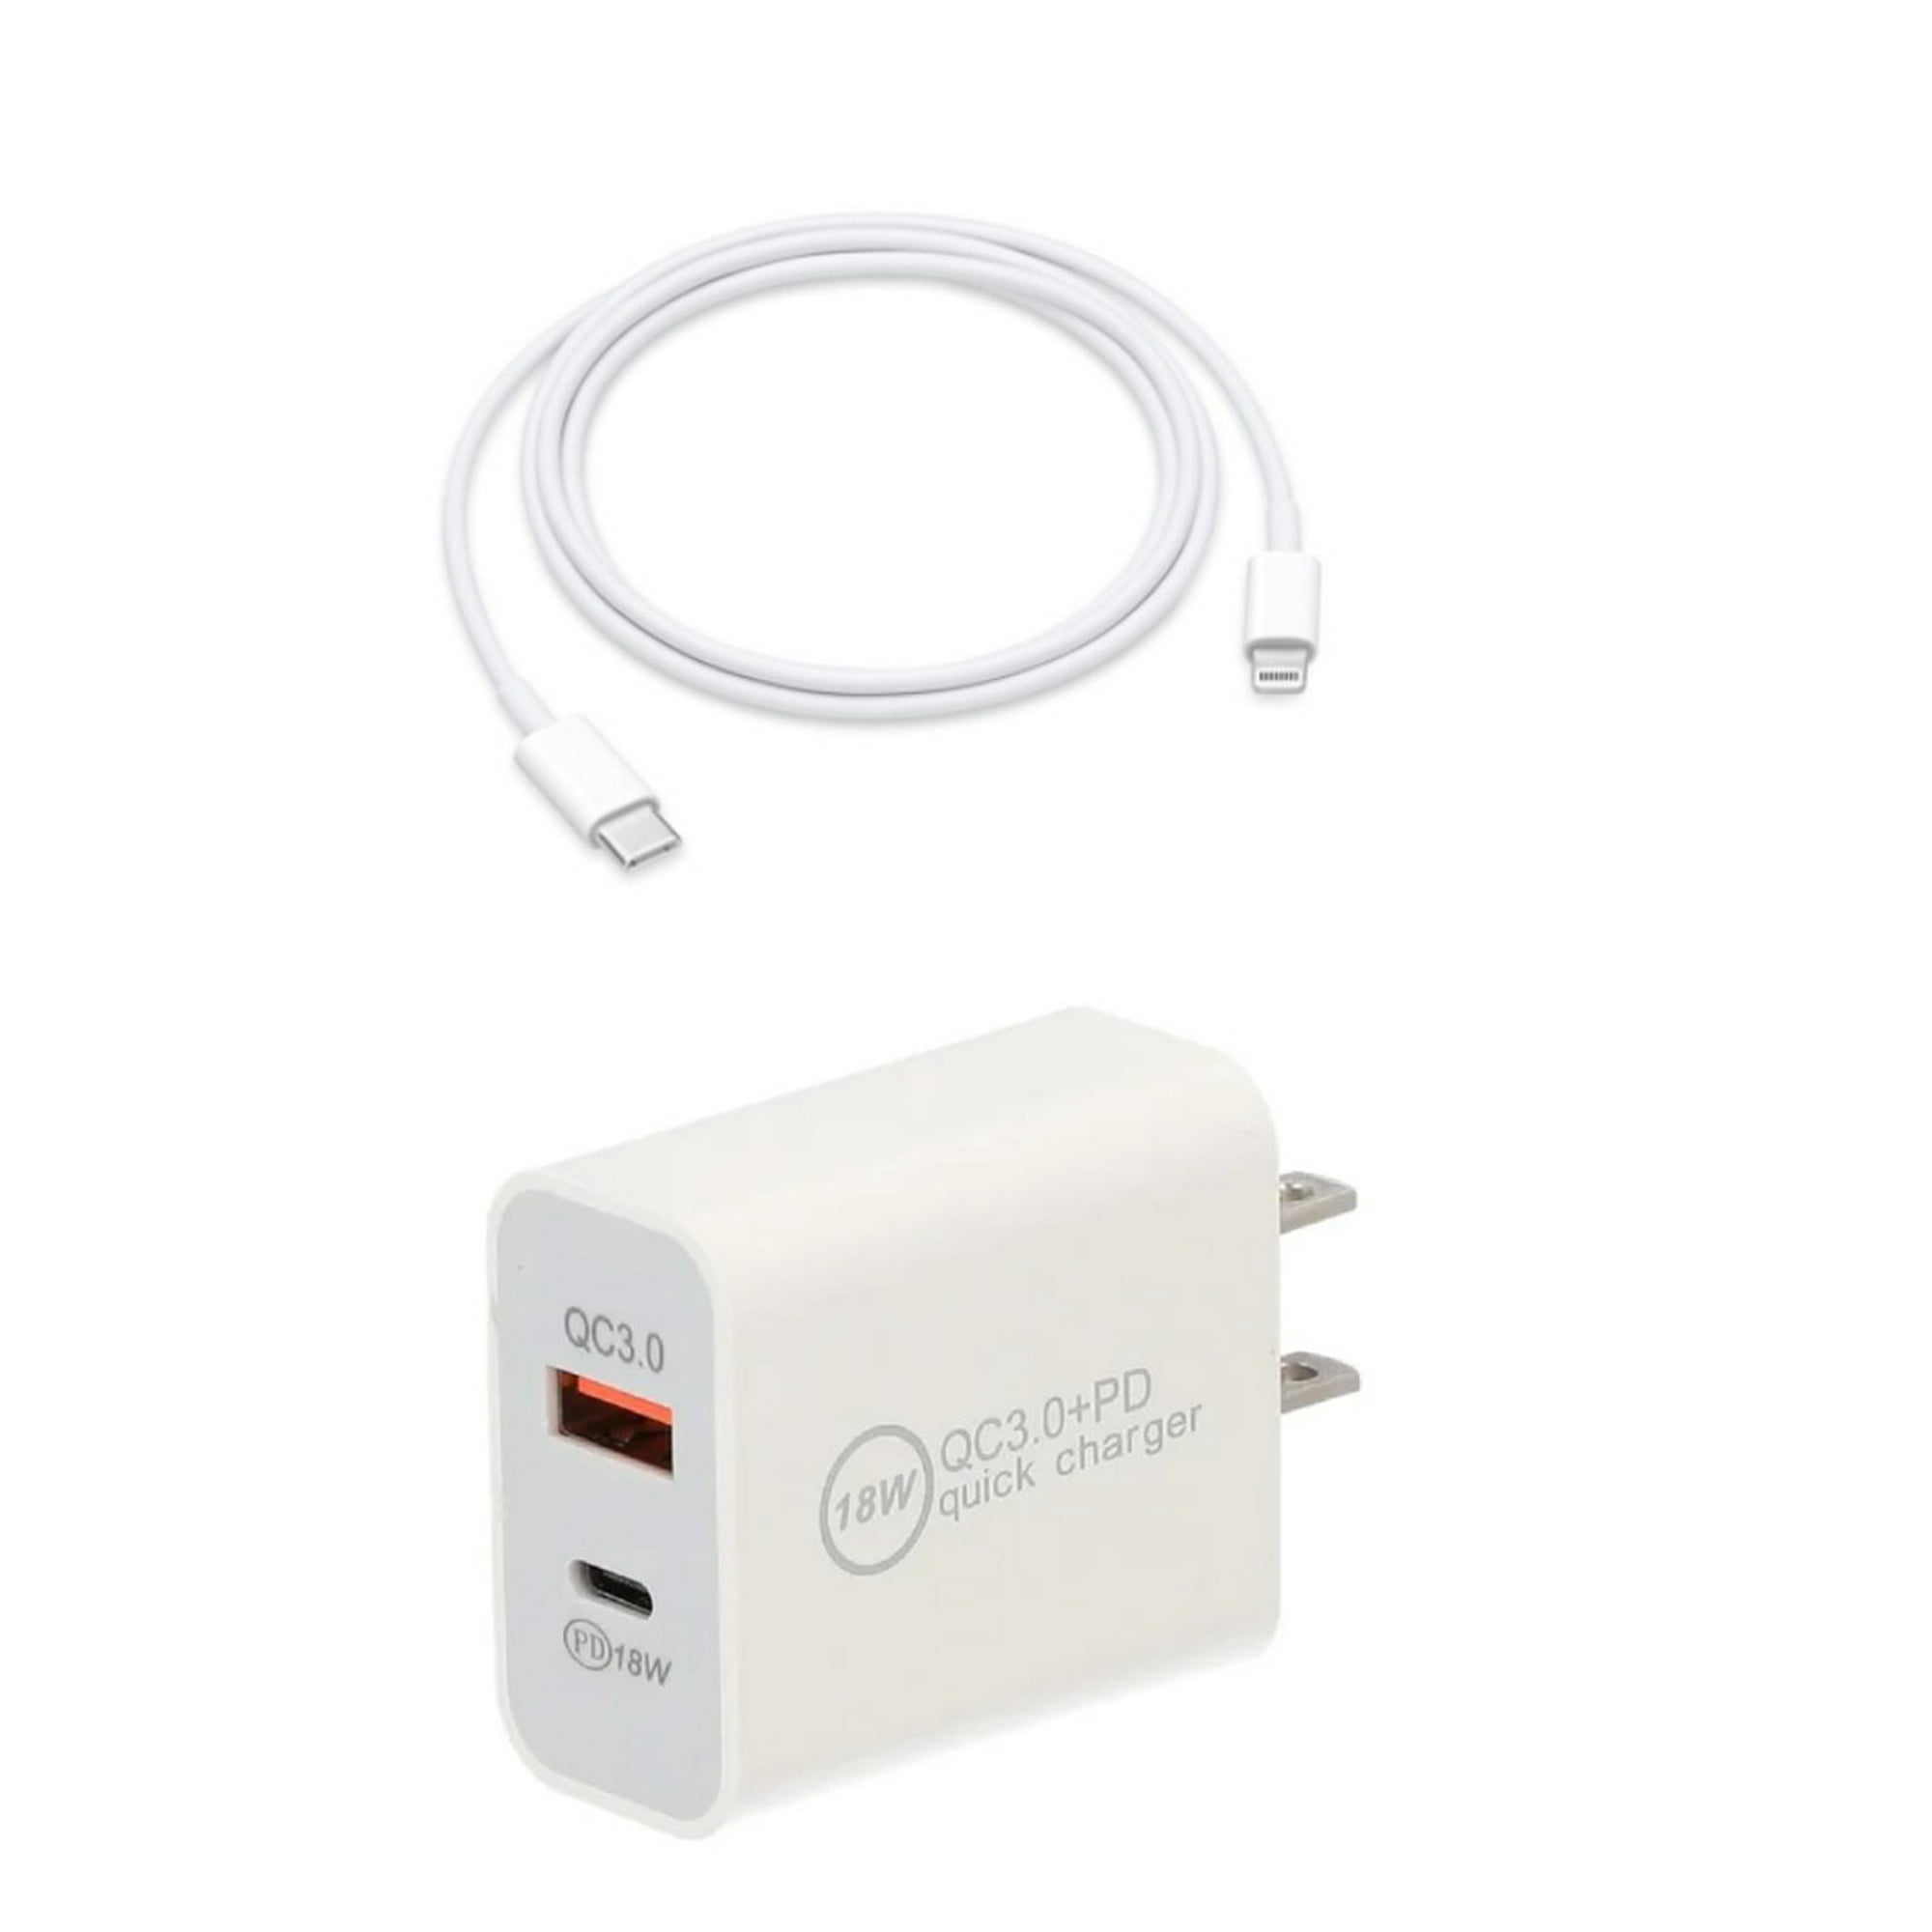 GENERICO Cable de carga rápida USB para iPhone - iPad 30w